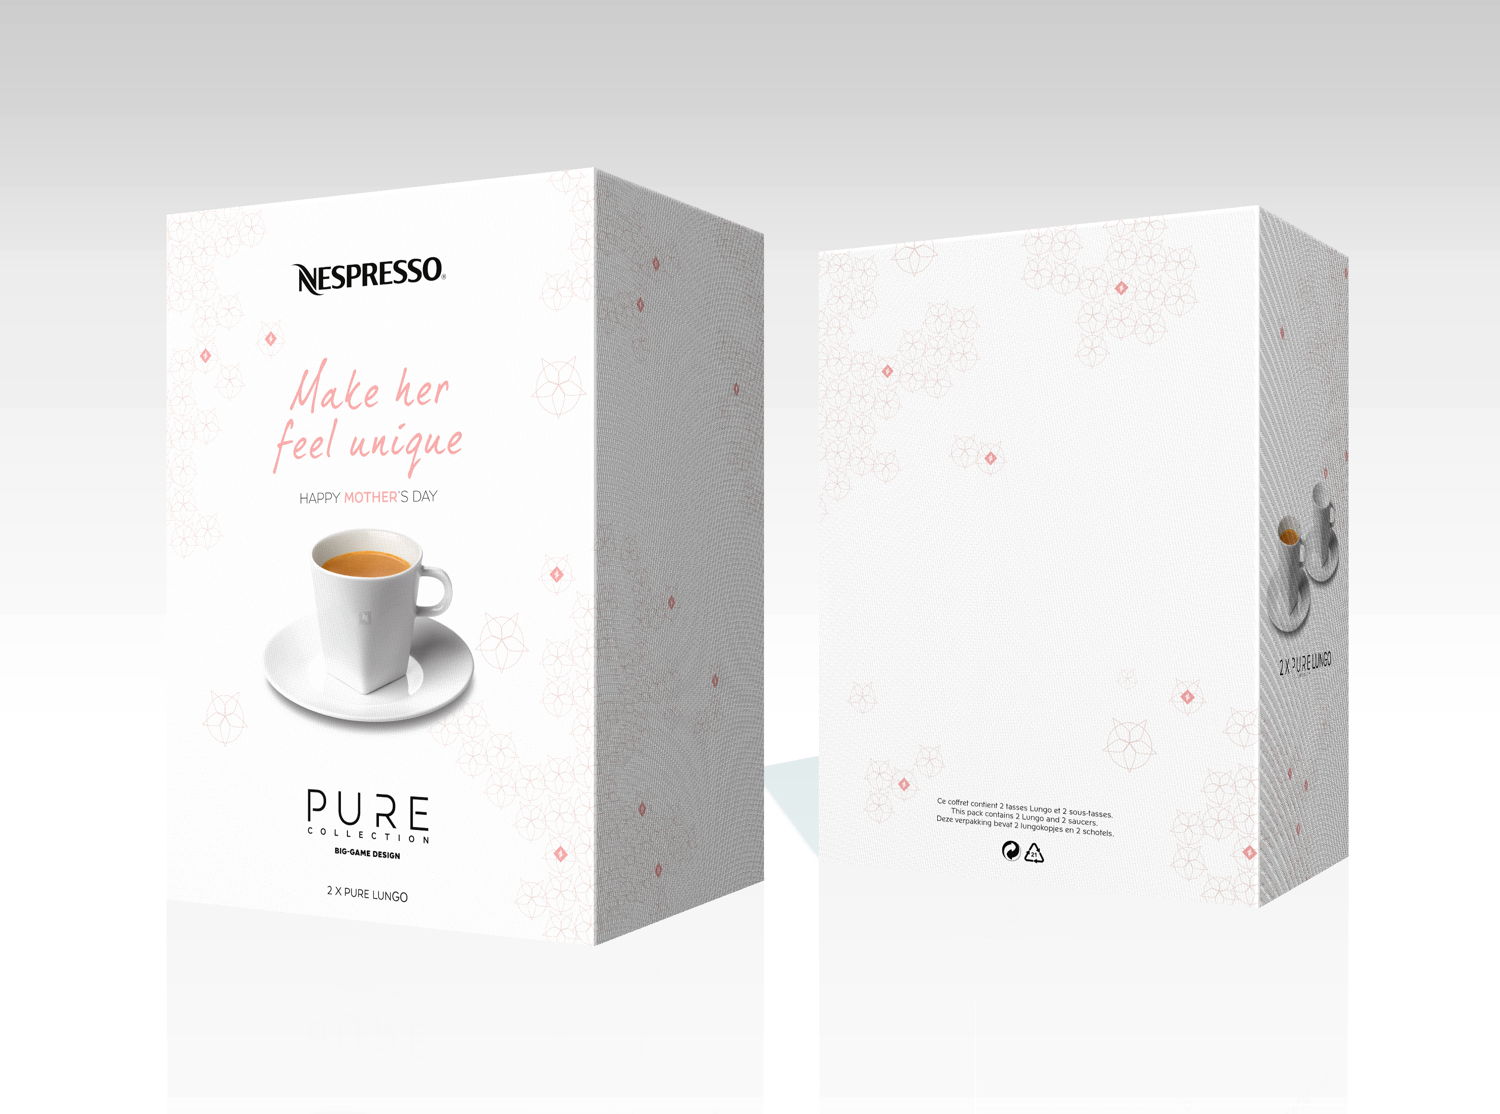  Limited Edition Moederdag set van 2 tassen Lungo PURE Collection, 24 €